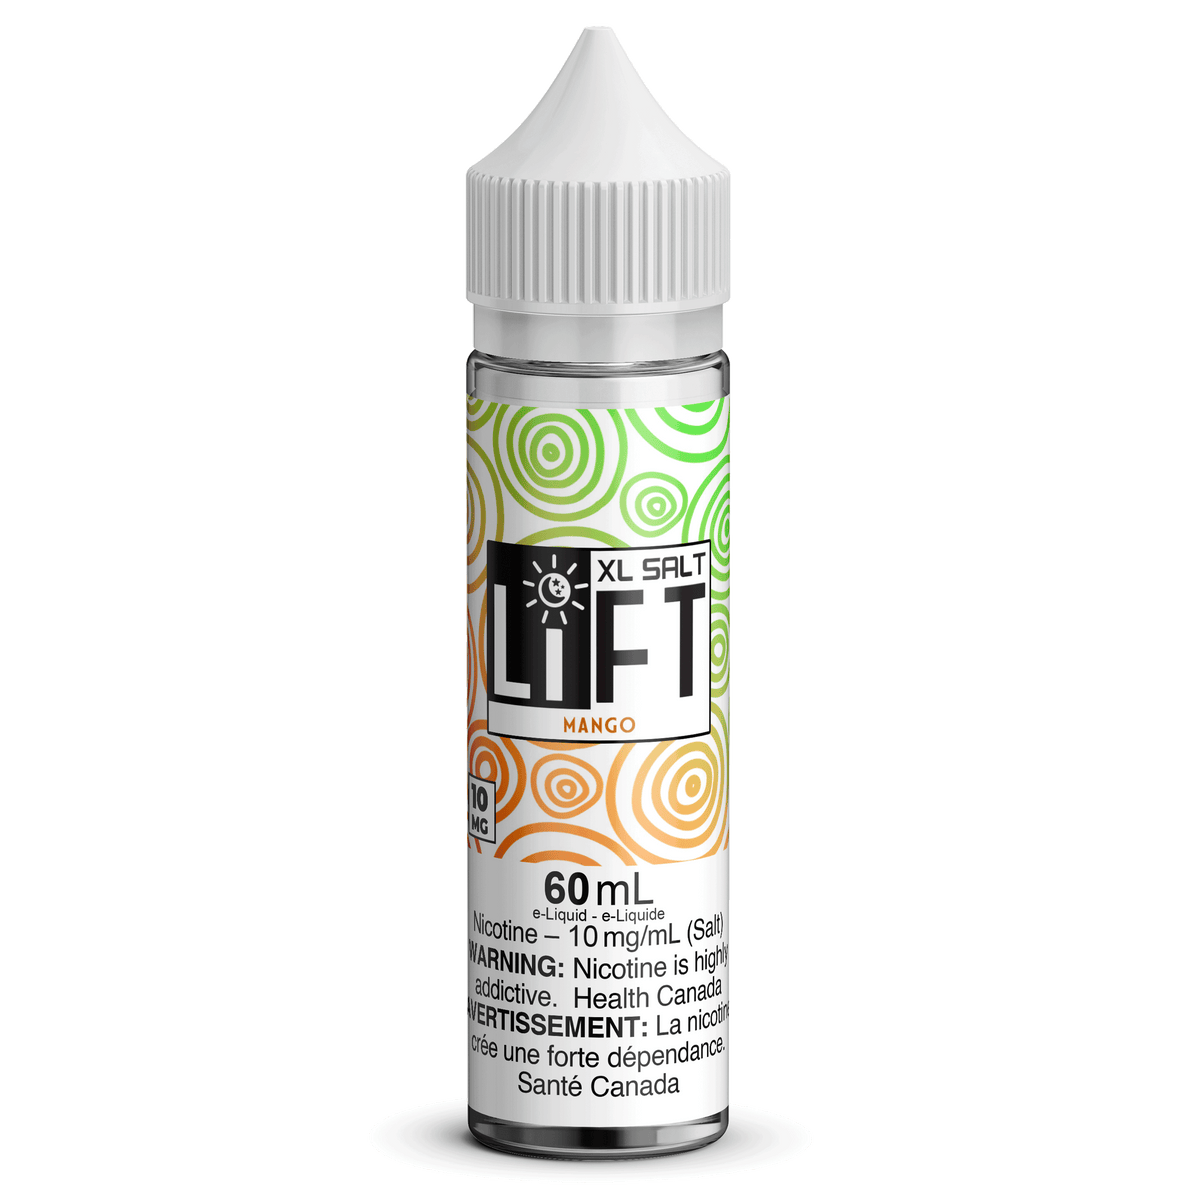 LIFT XL SALT - Mango available on Canada online vape shop